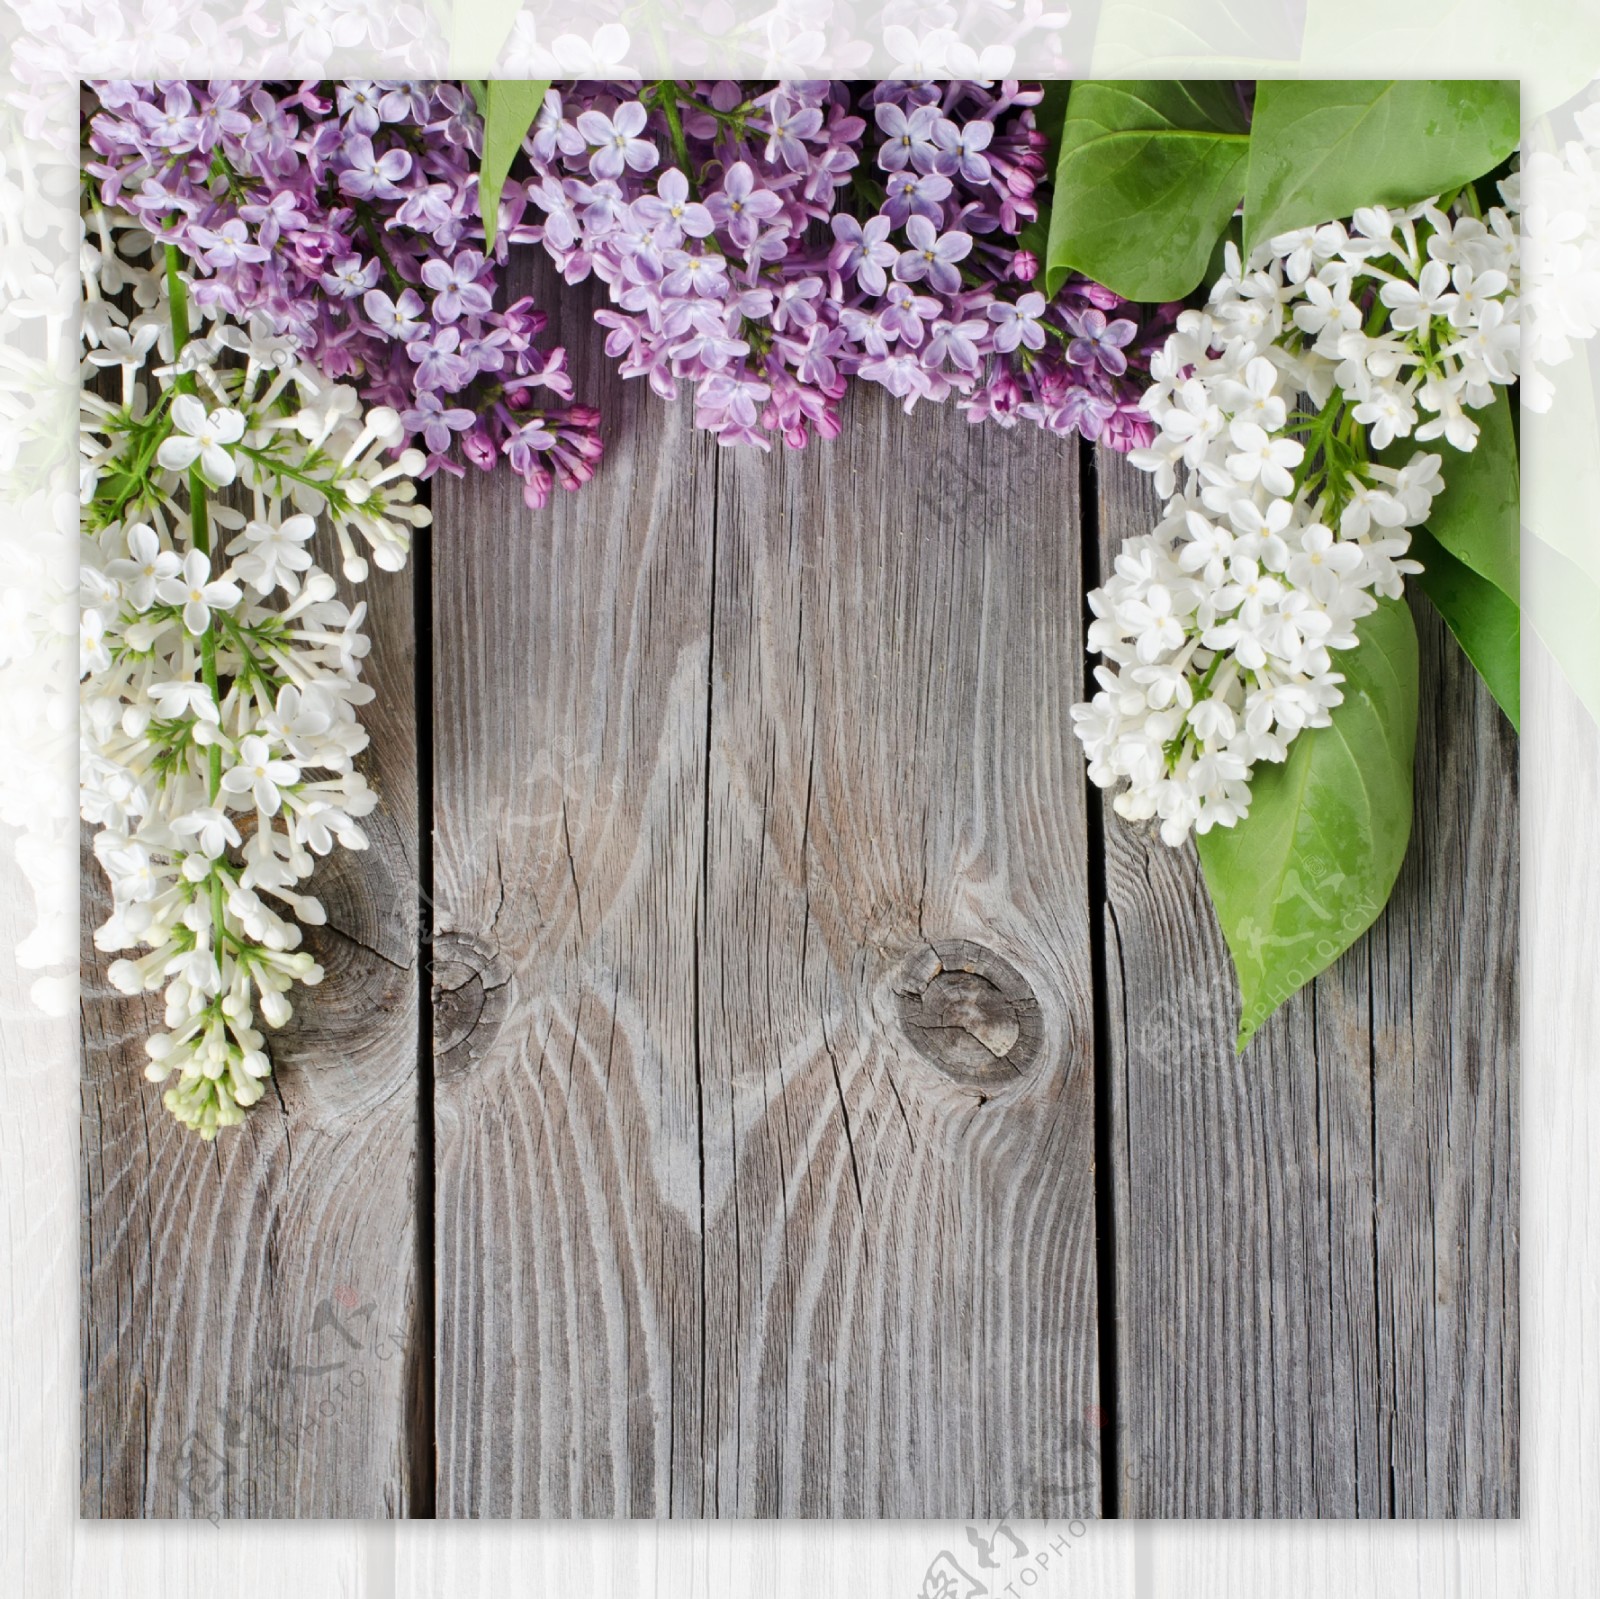 鲜花与木板背景图片